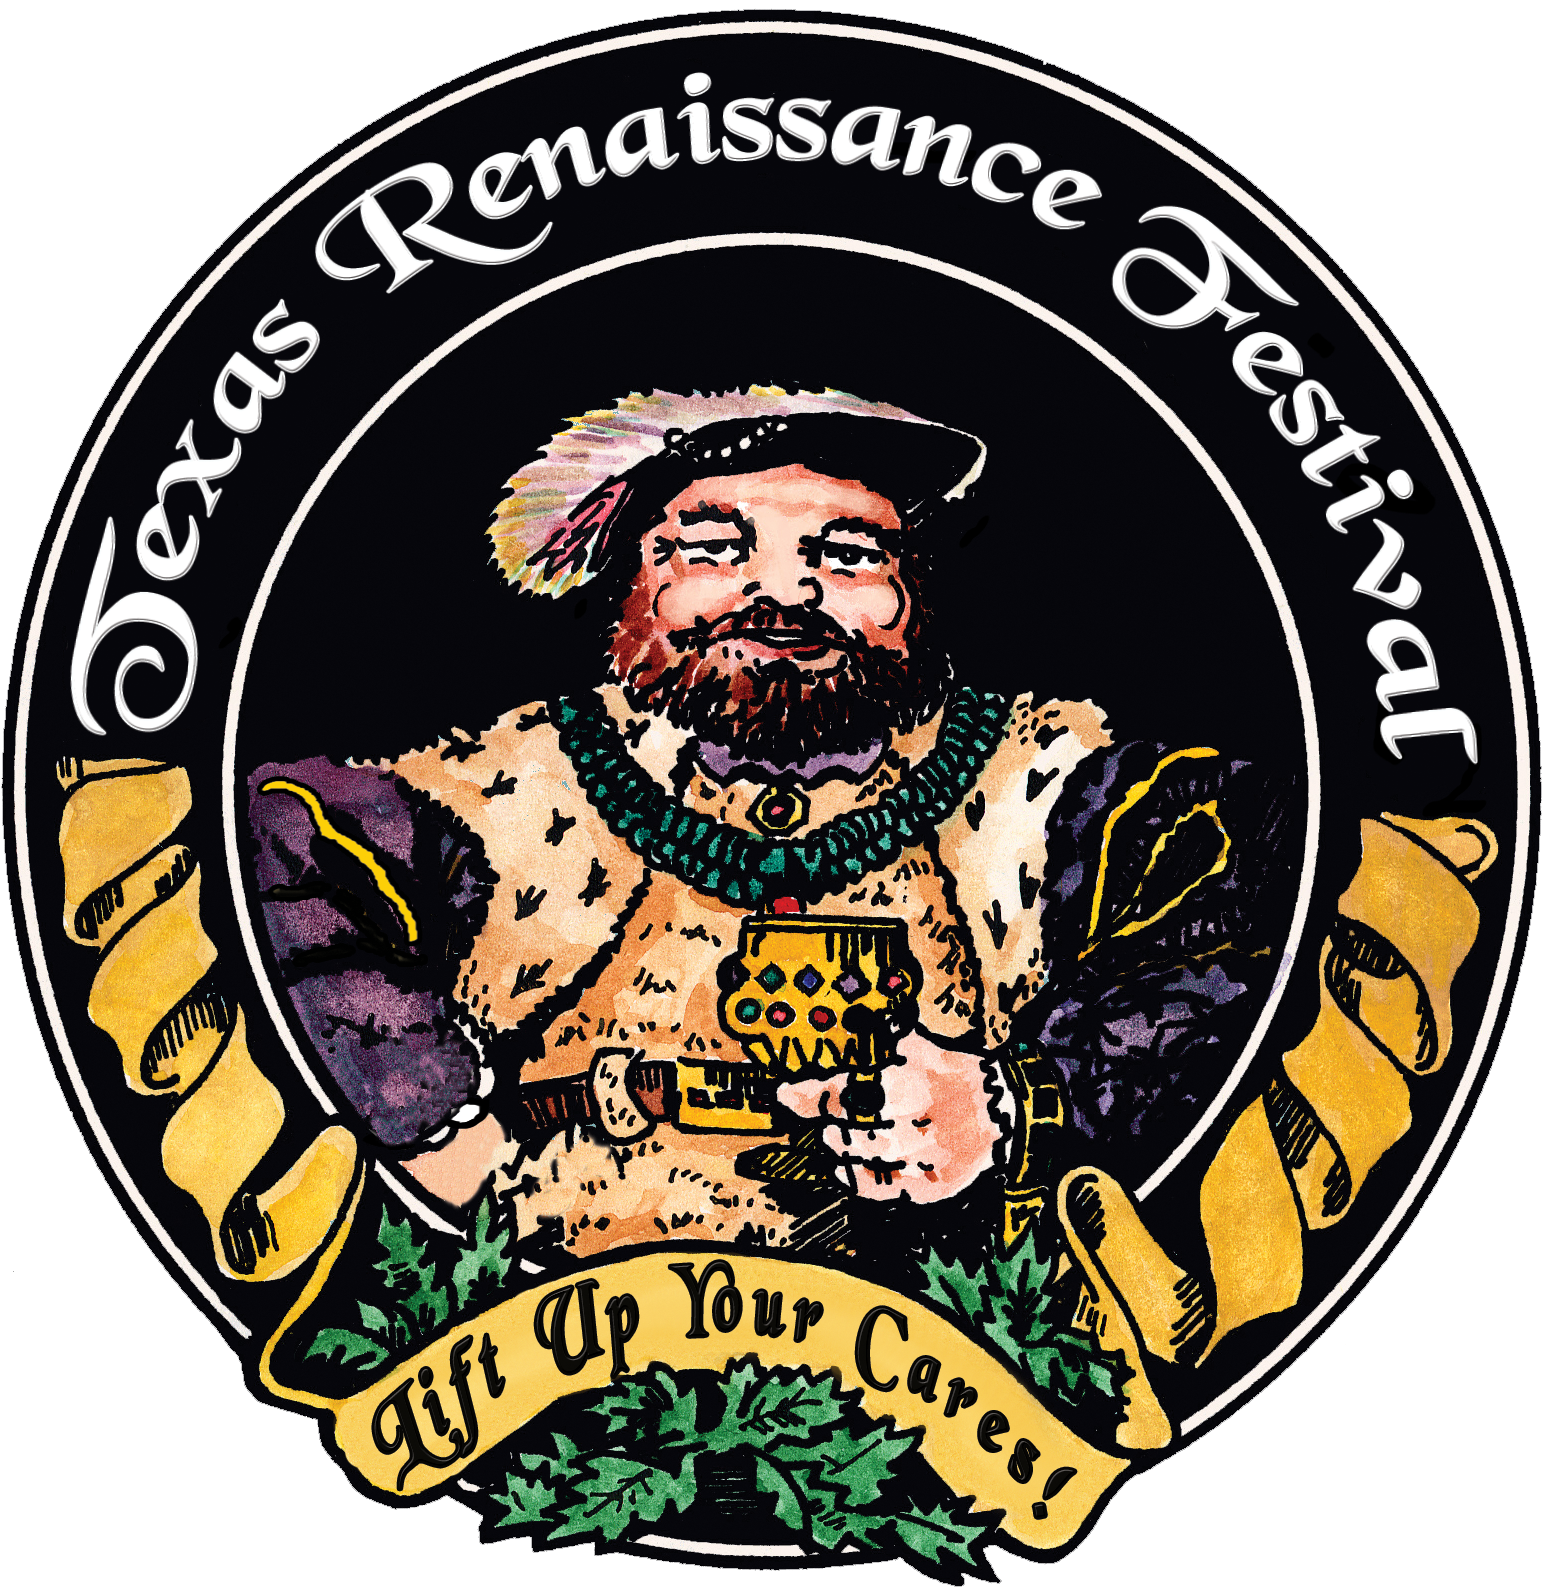 2015 Color Lift Up Your Cares - Texas Renaissance Festival Logo (1686x1677)